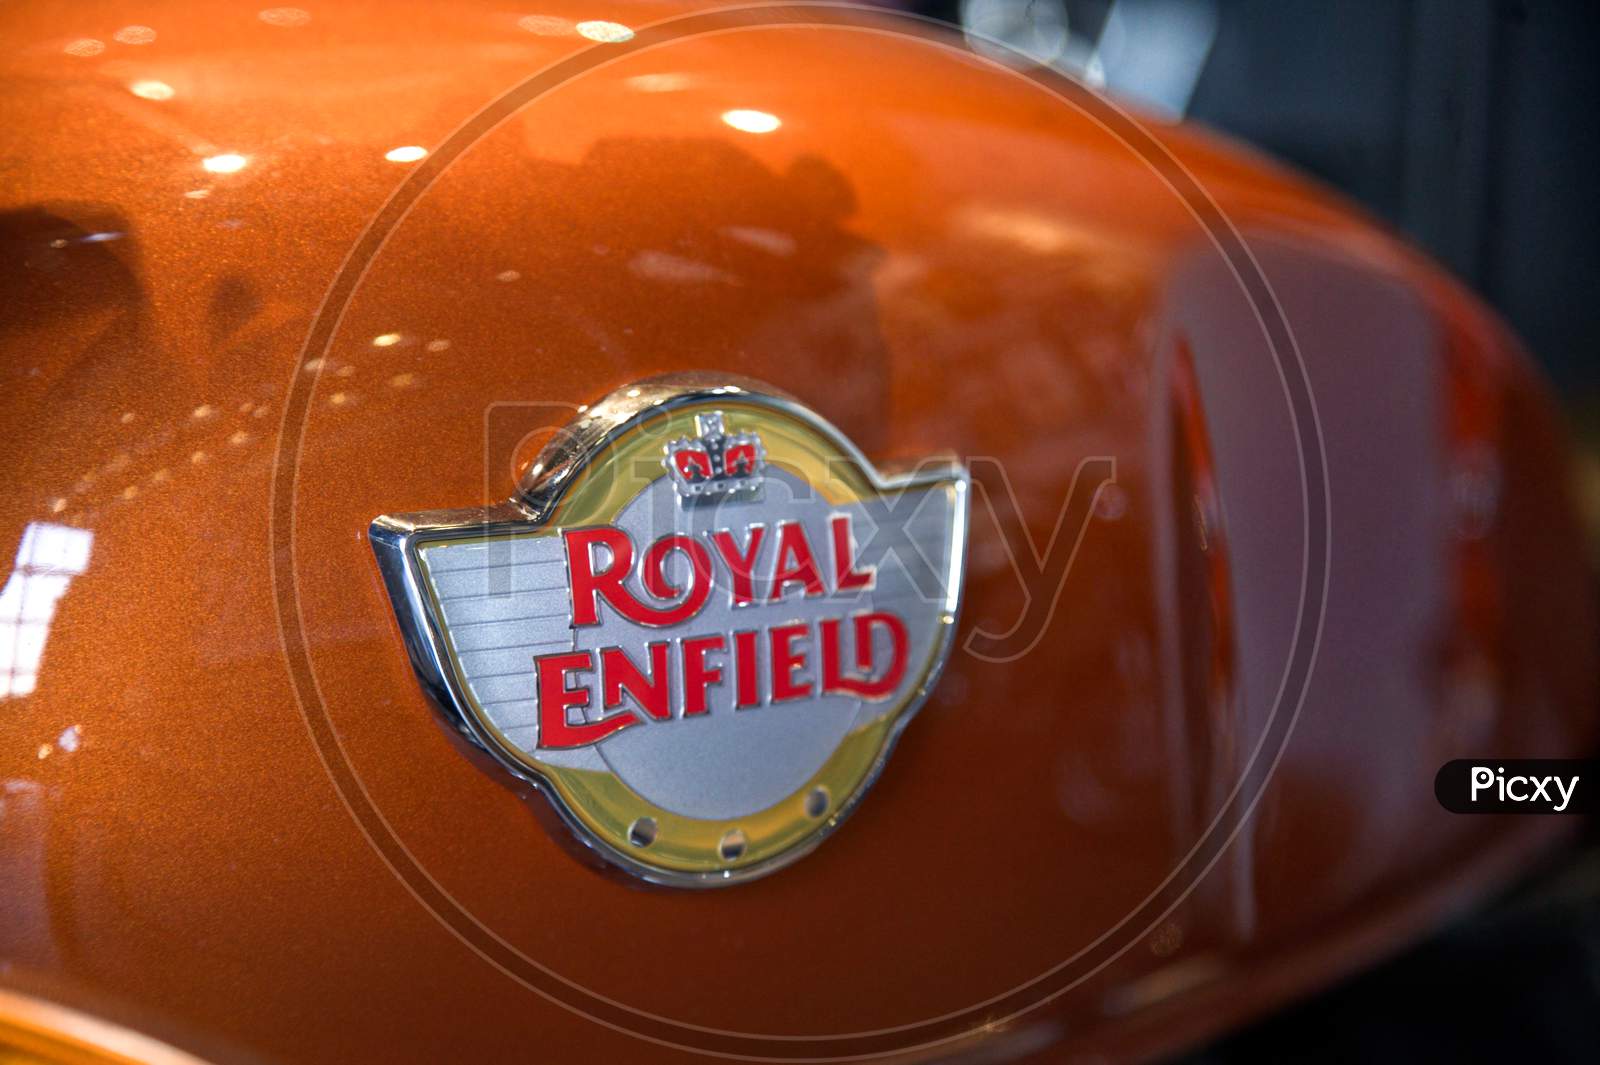 Royal Enfield Motor Cycles